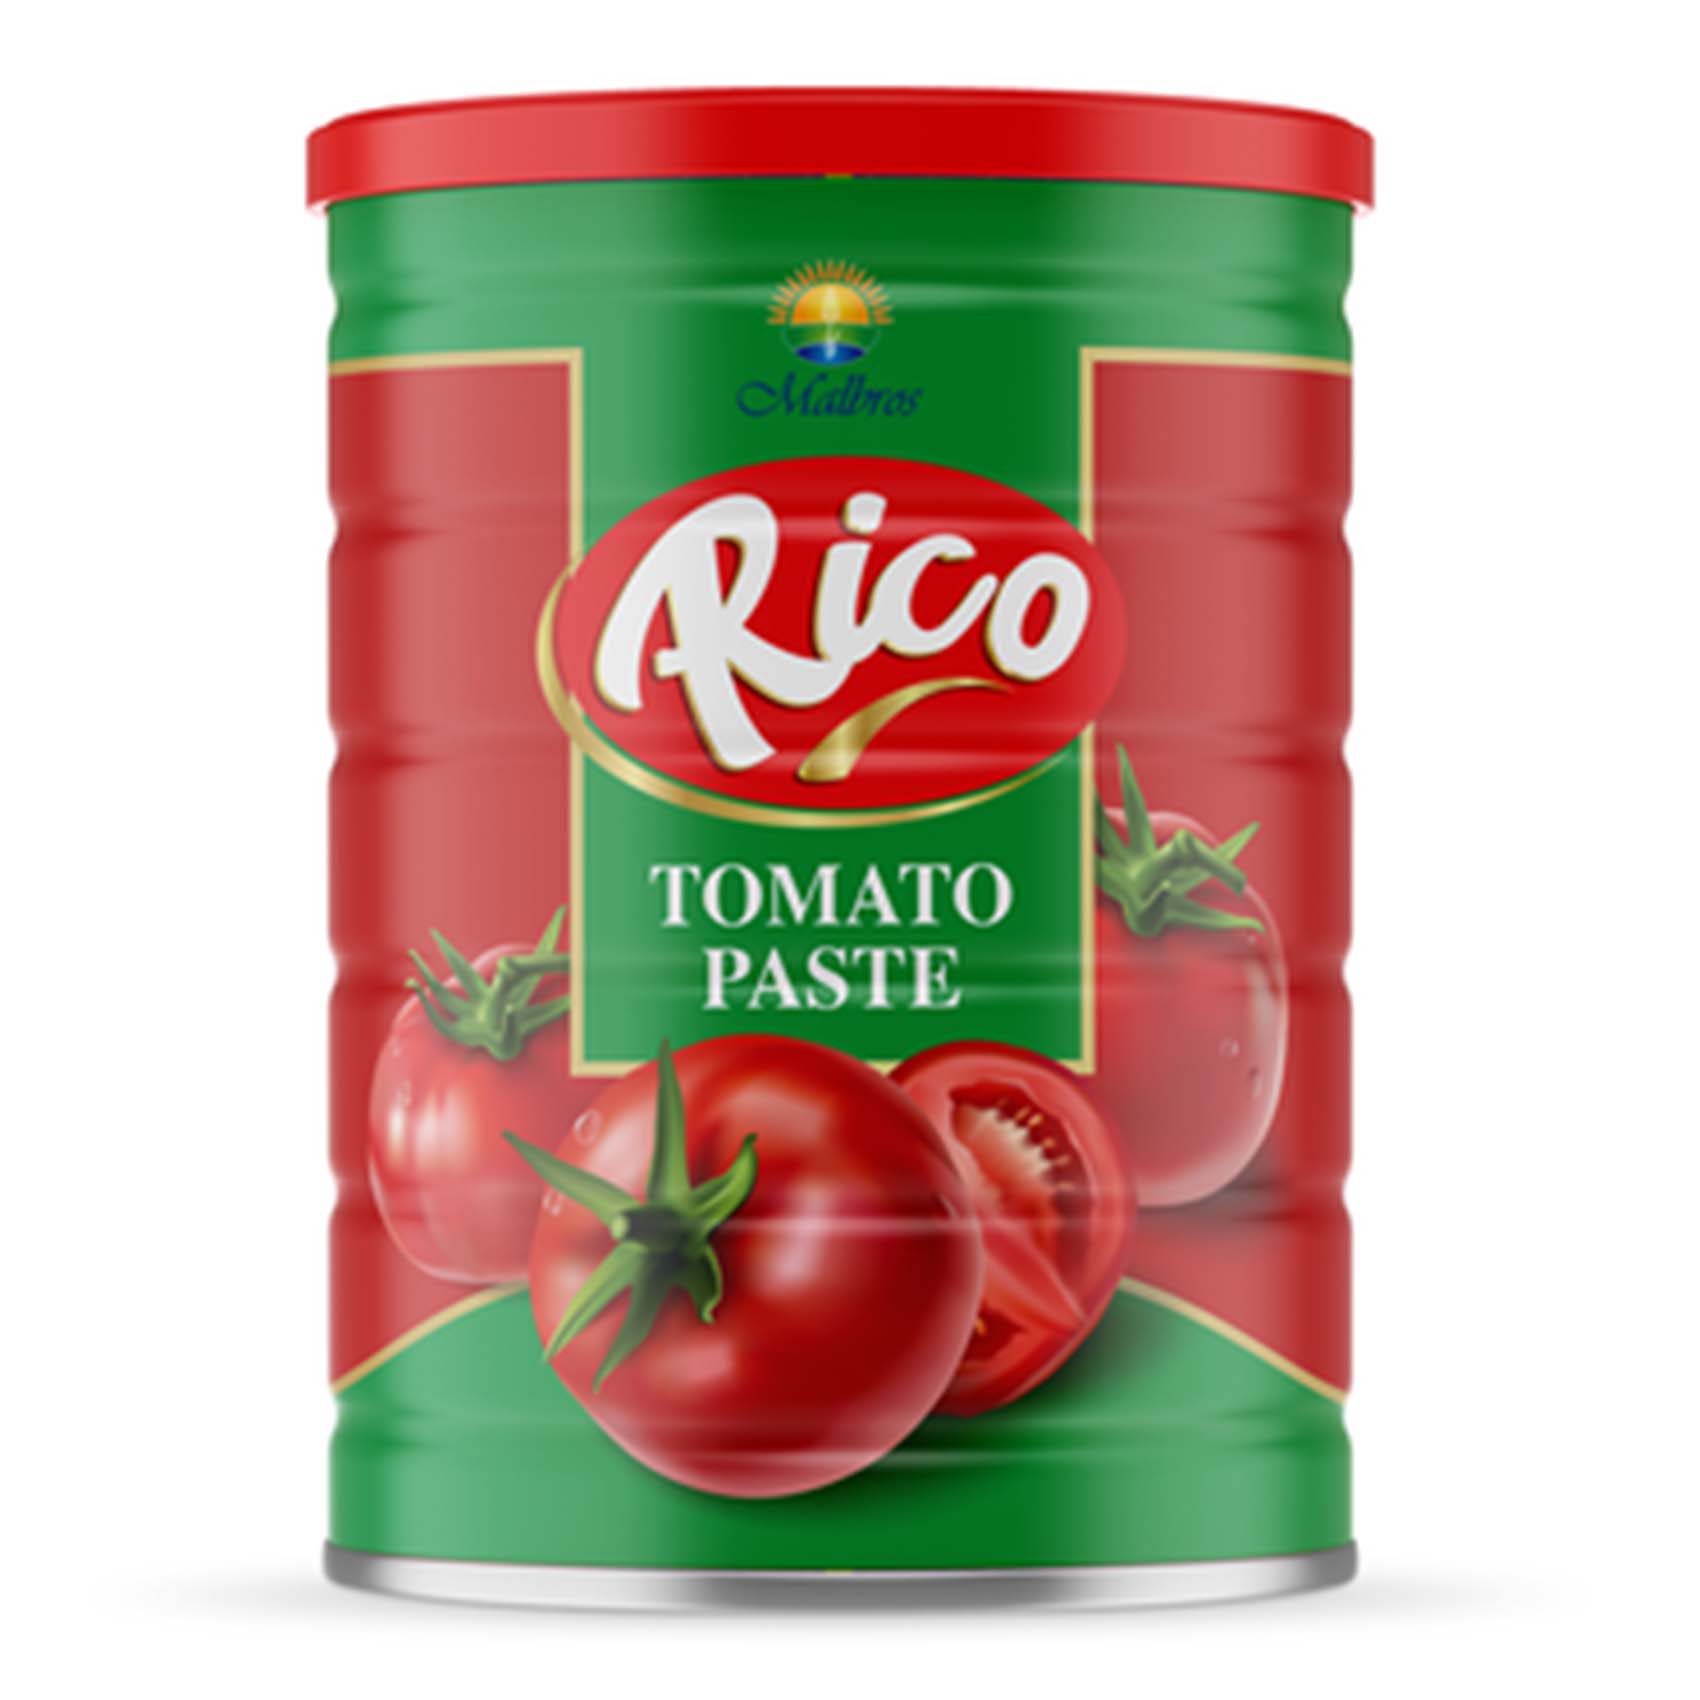 Rico Tomato Paste 400g